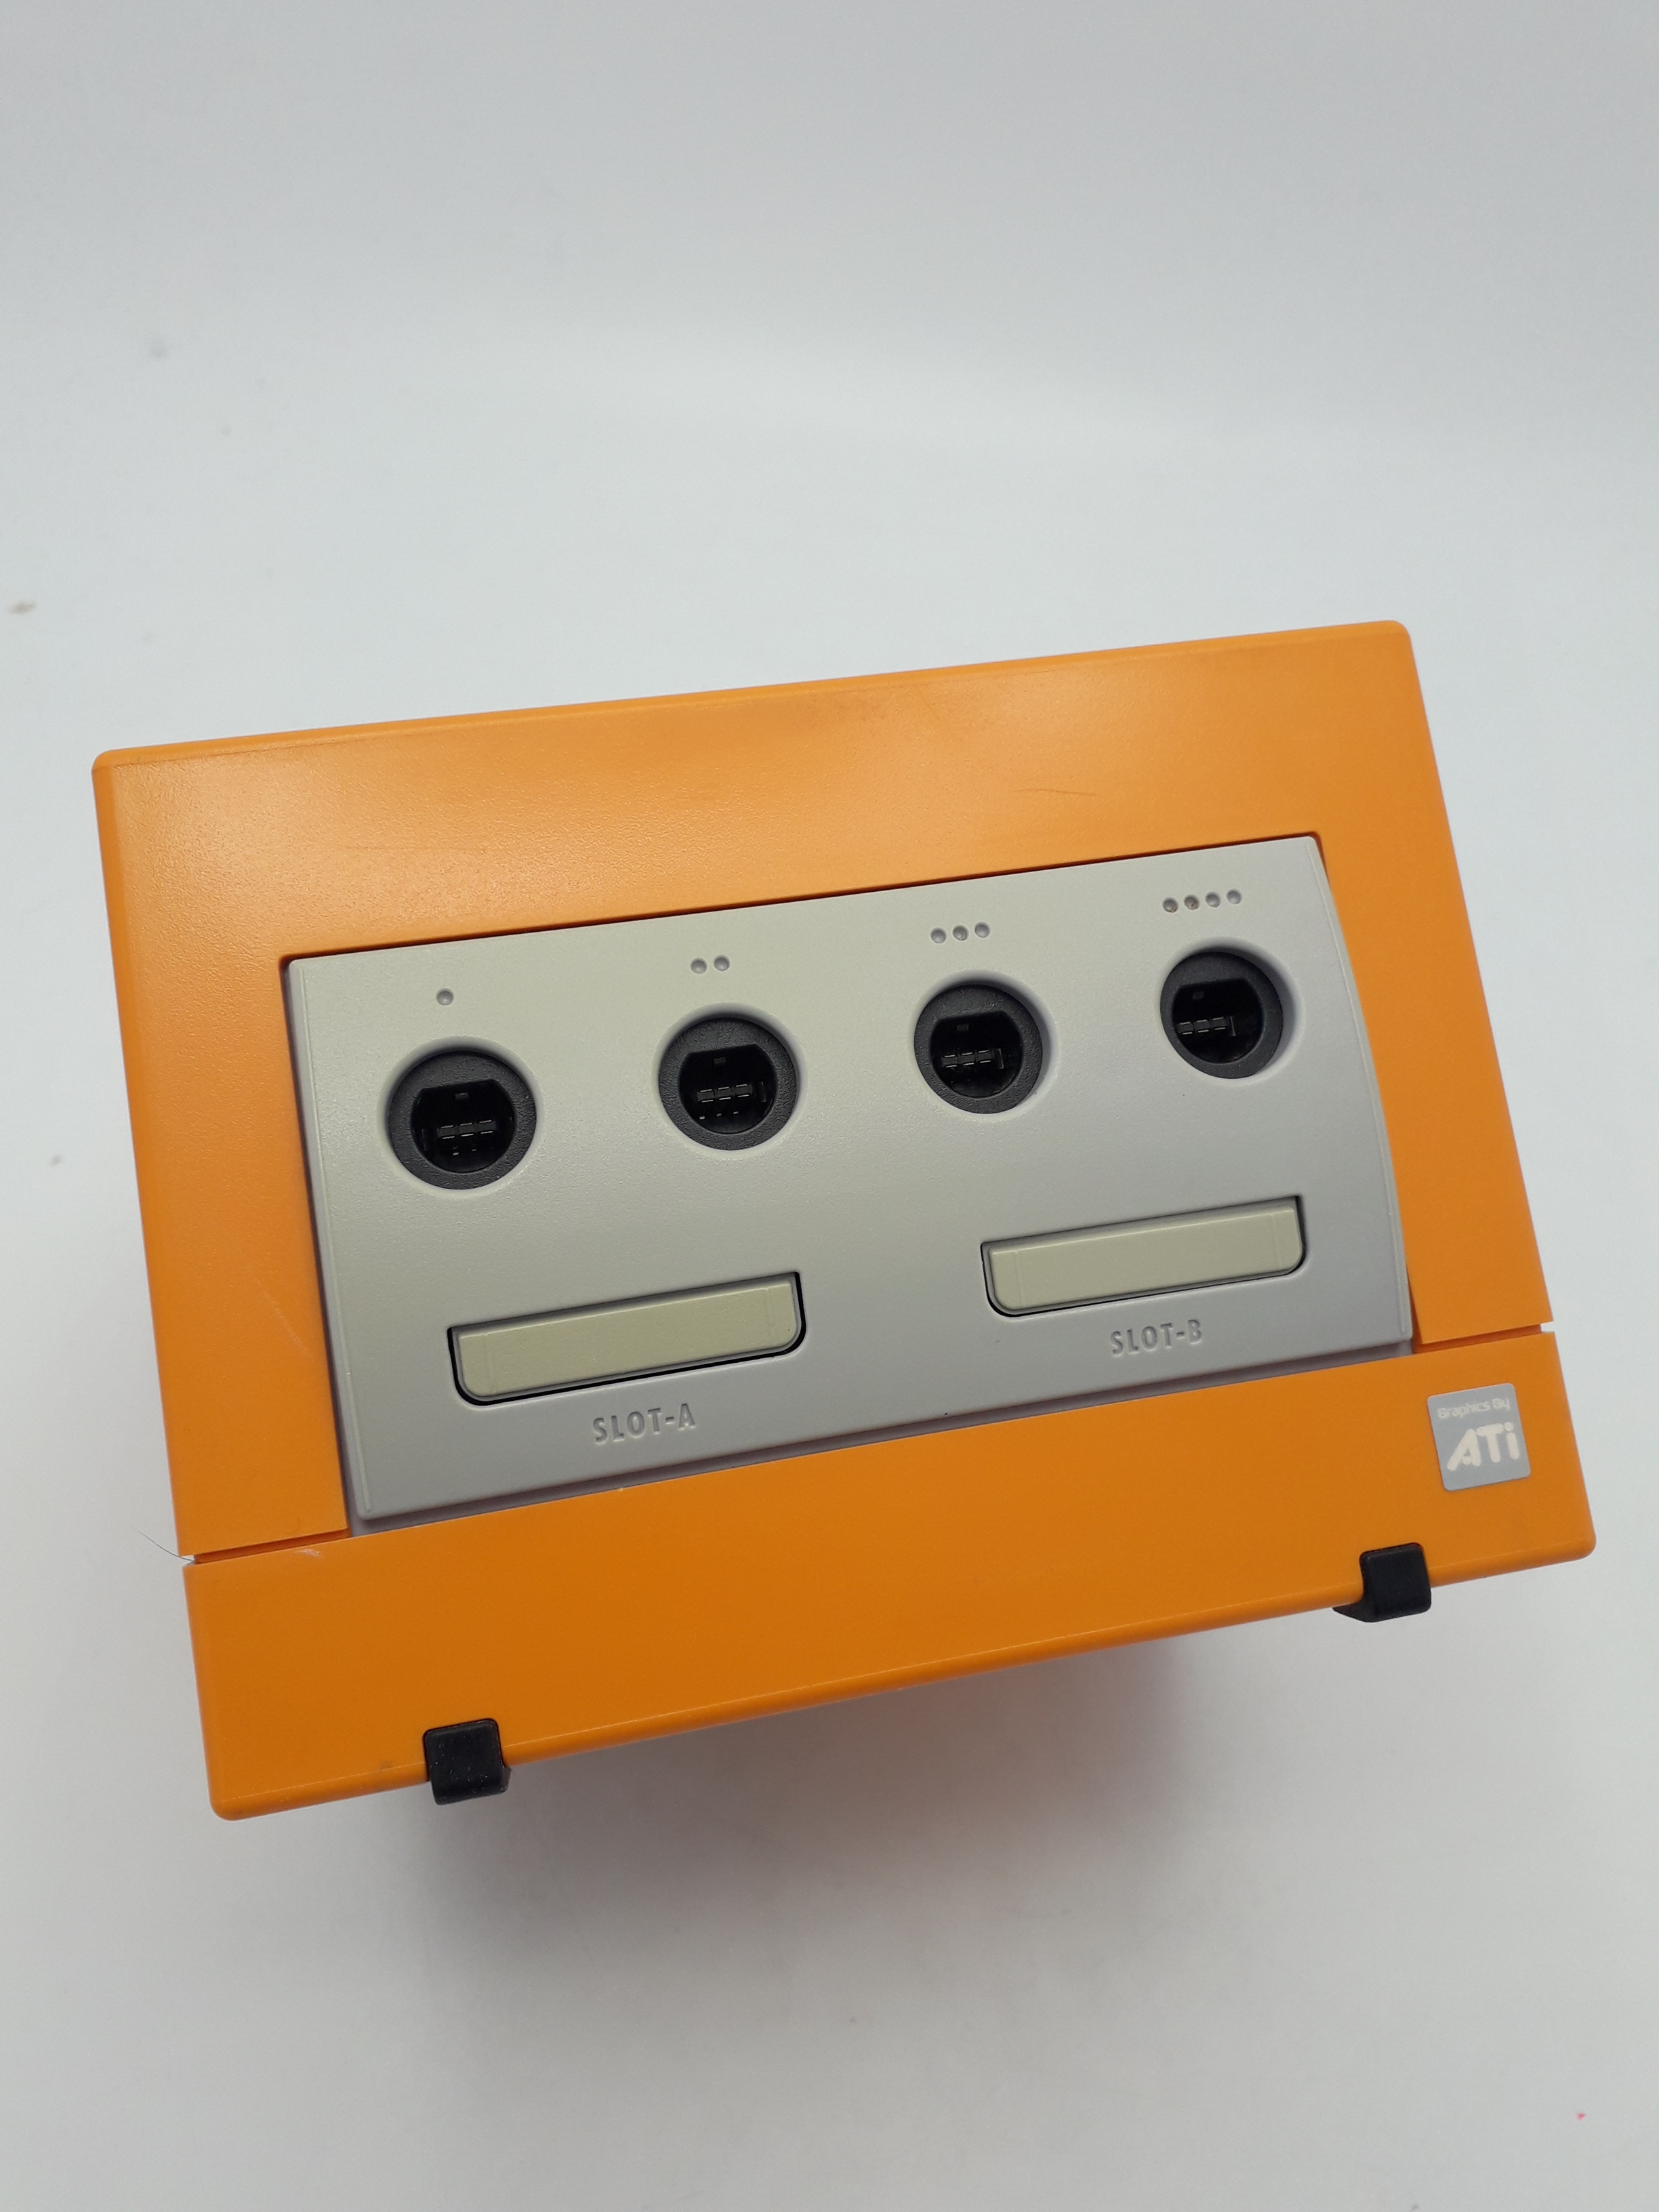 Foto van Gamecube Spice Orange in Doos NTSC-J